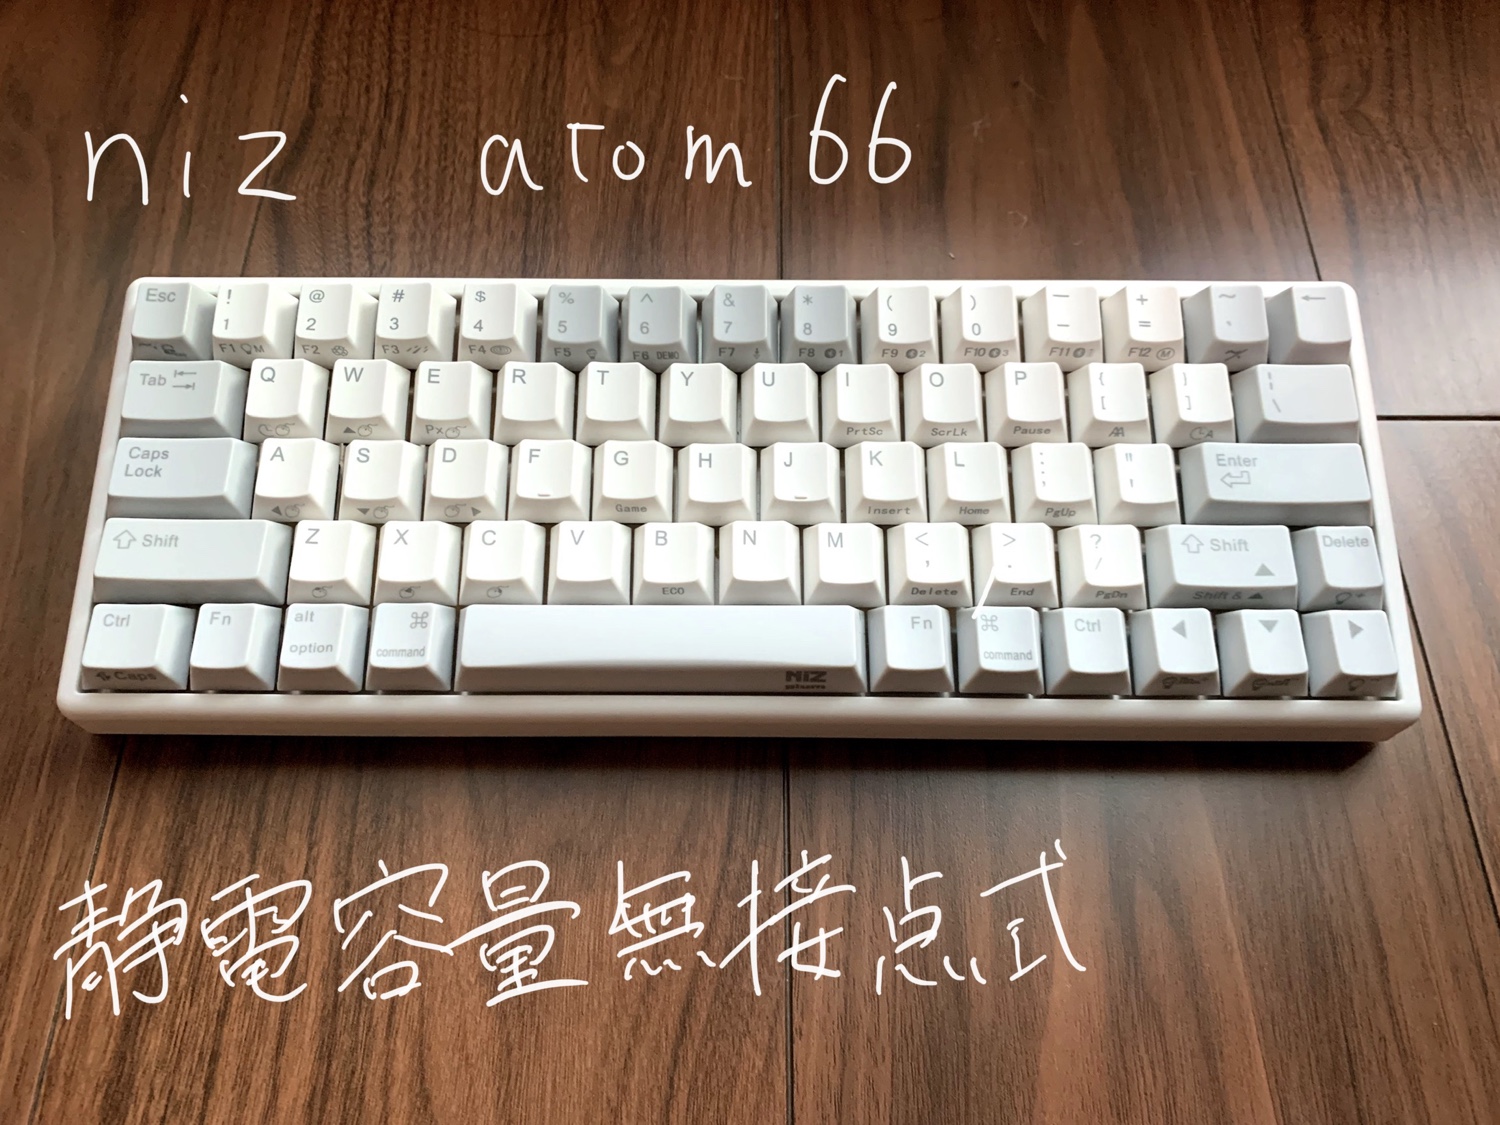 NiZ Atom66